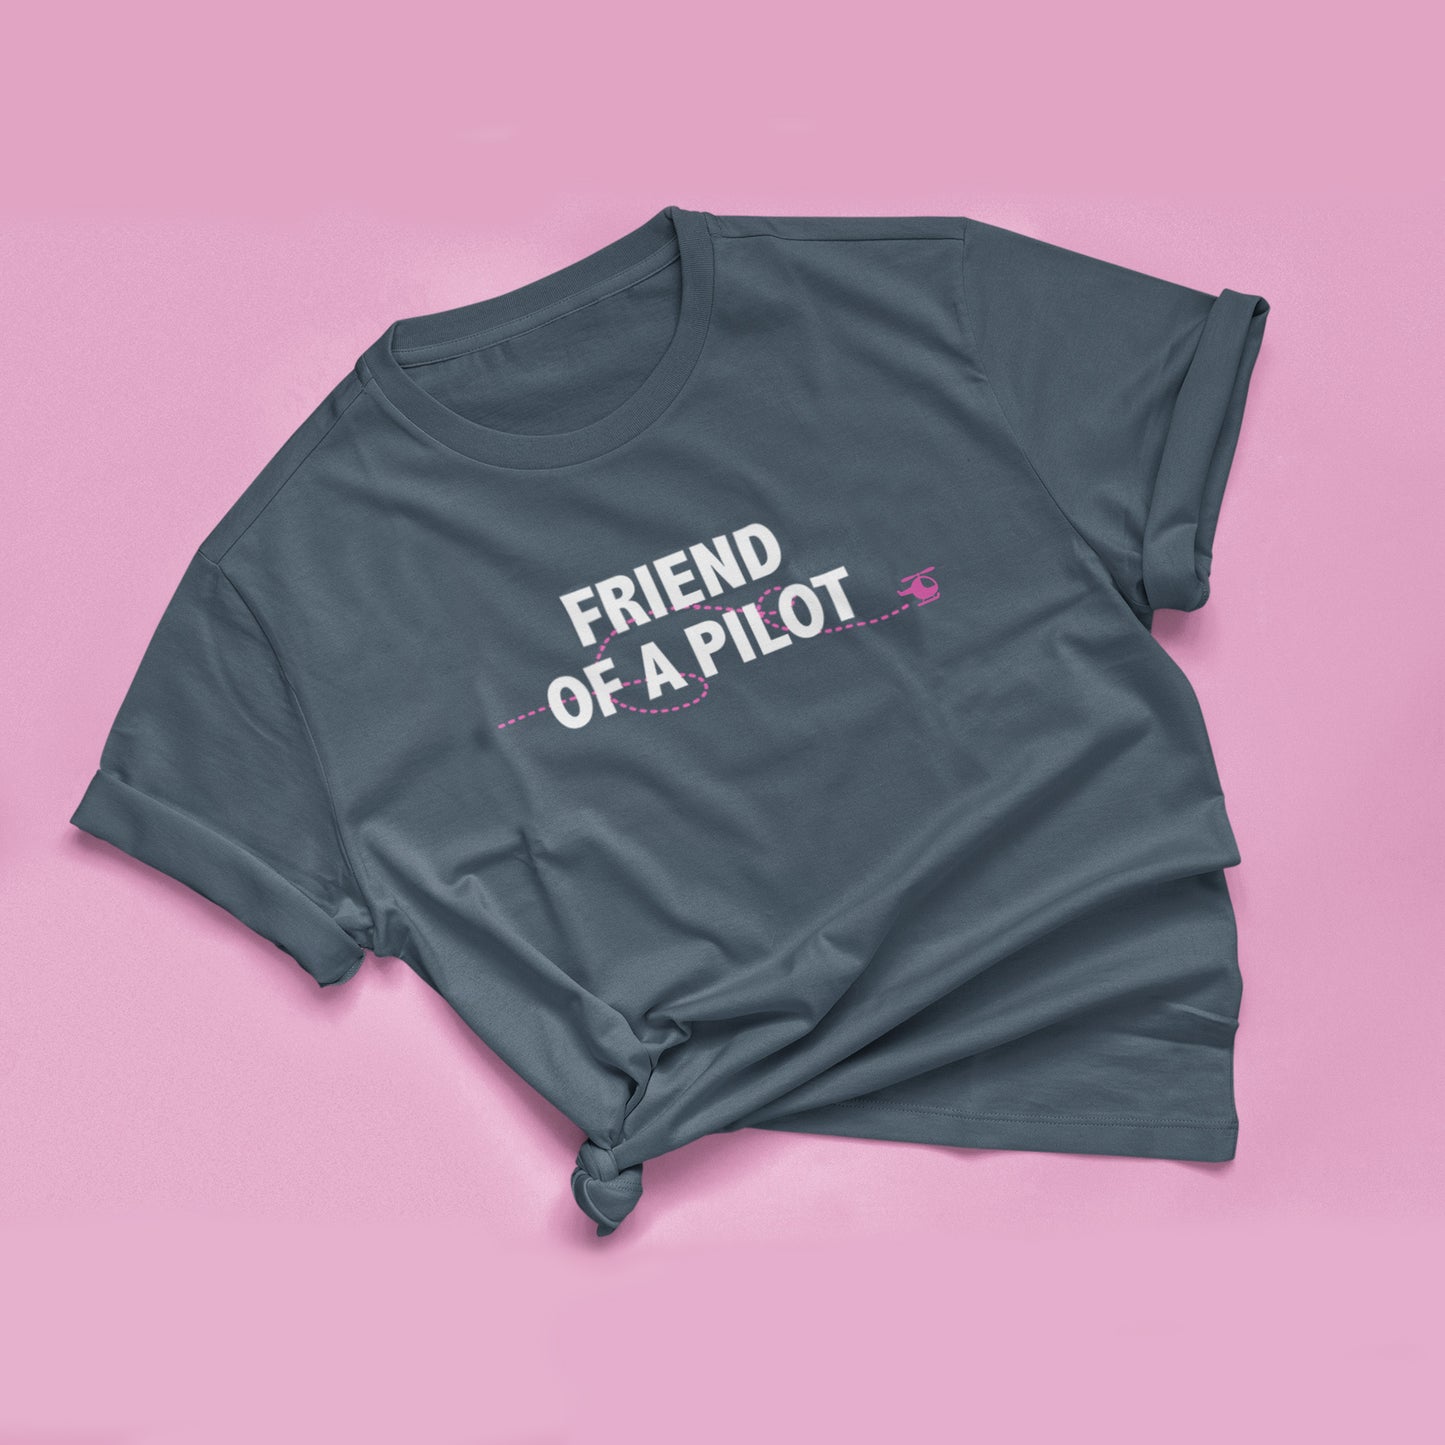 Friend of the/a Pilot T-shirt